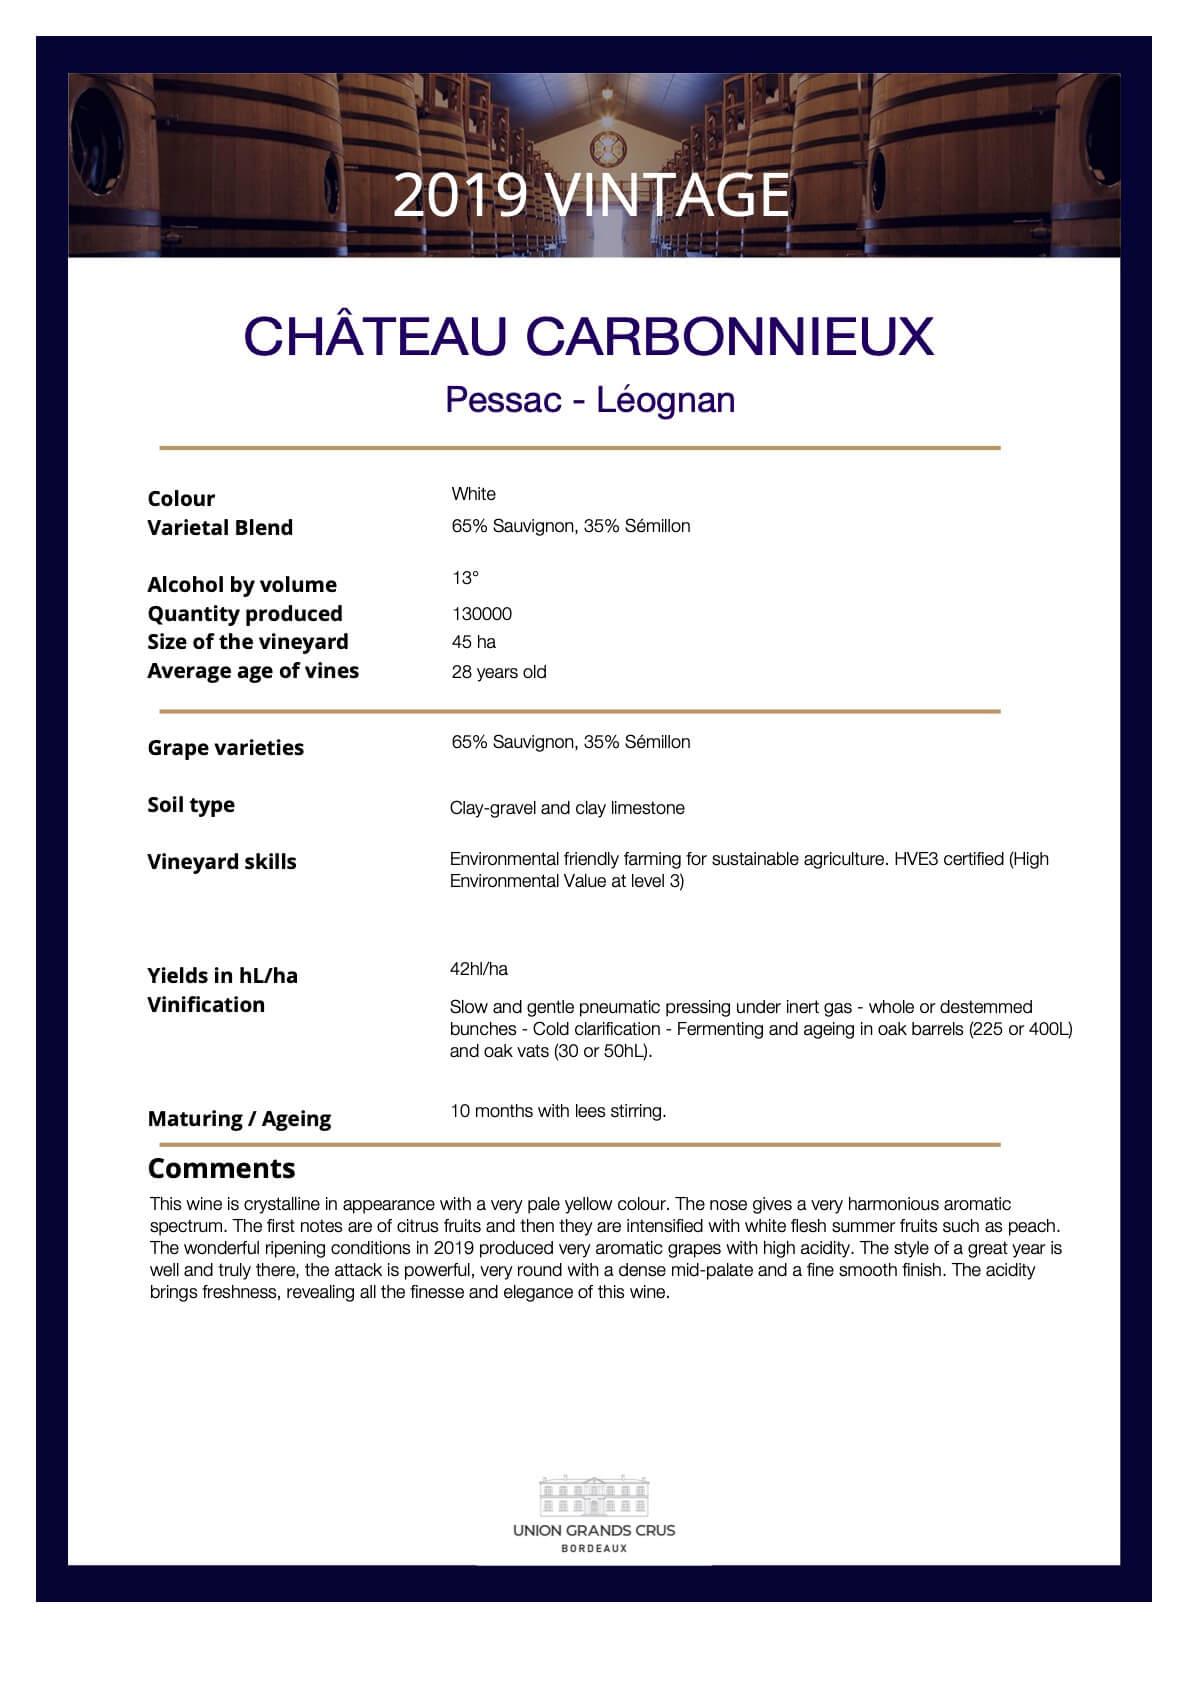 Château Carbonnieux - White